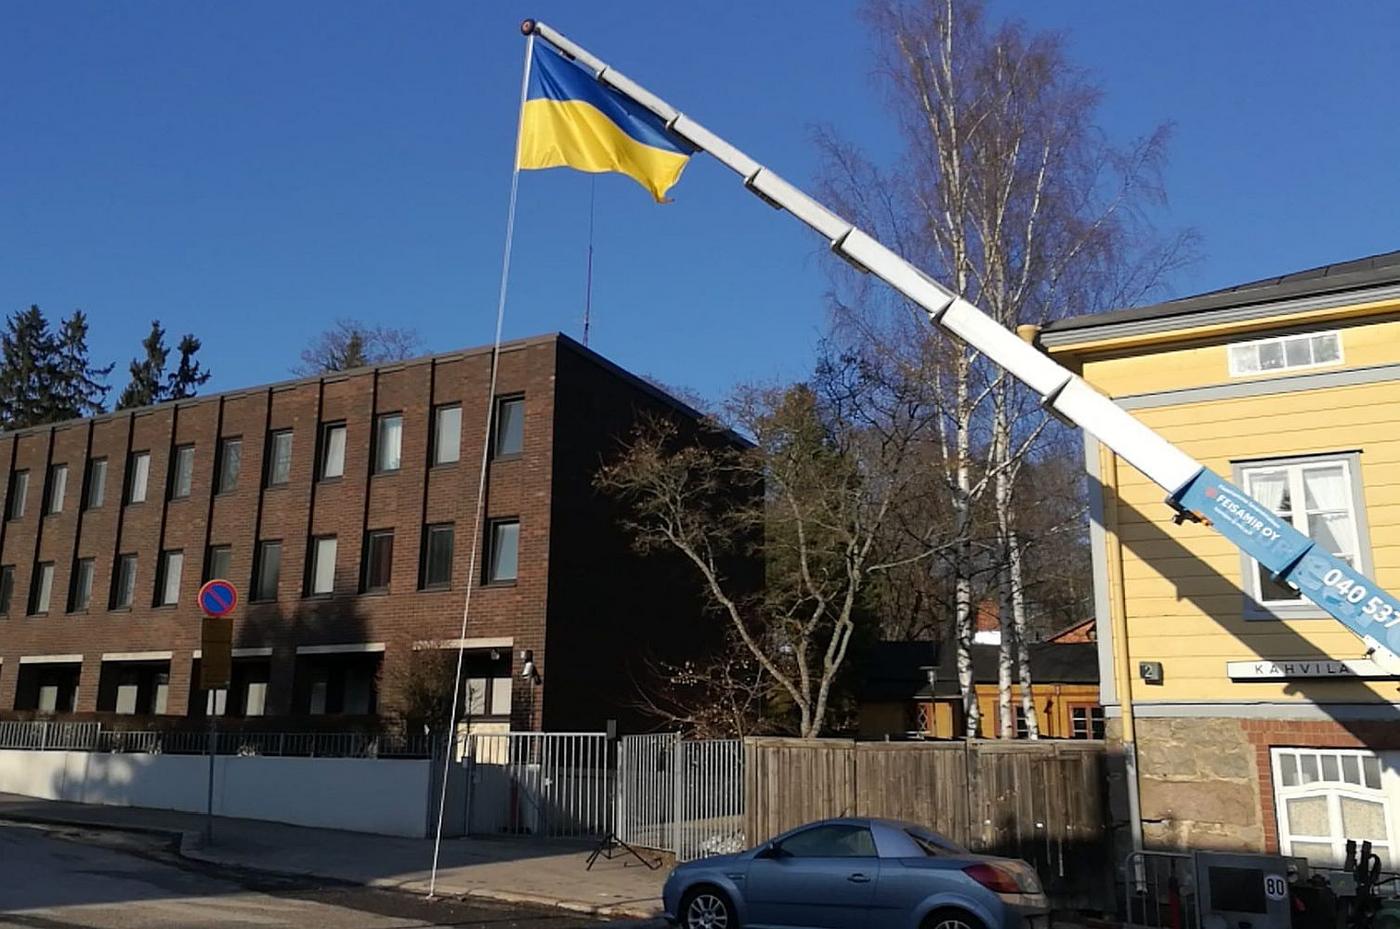 Kran lyfter flagga upp i ett träd i en park vid ett höghus